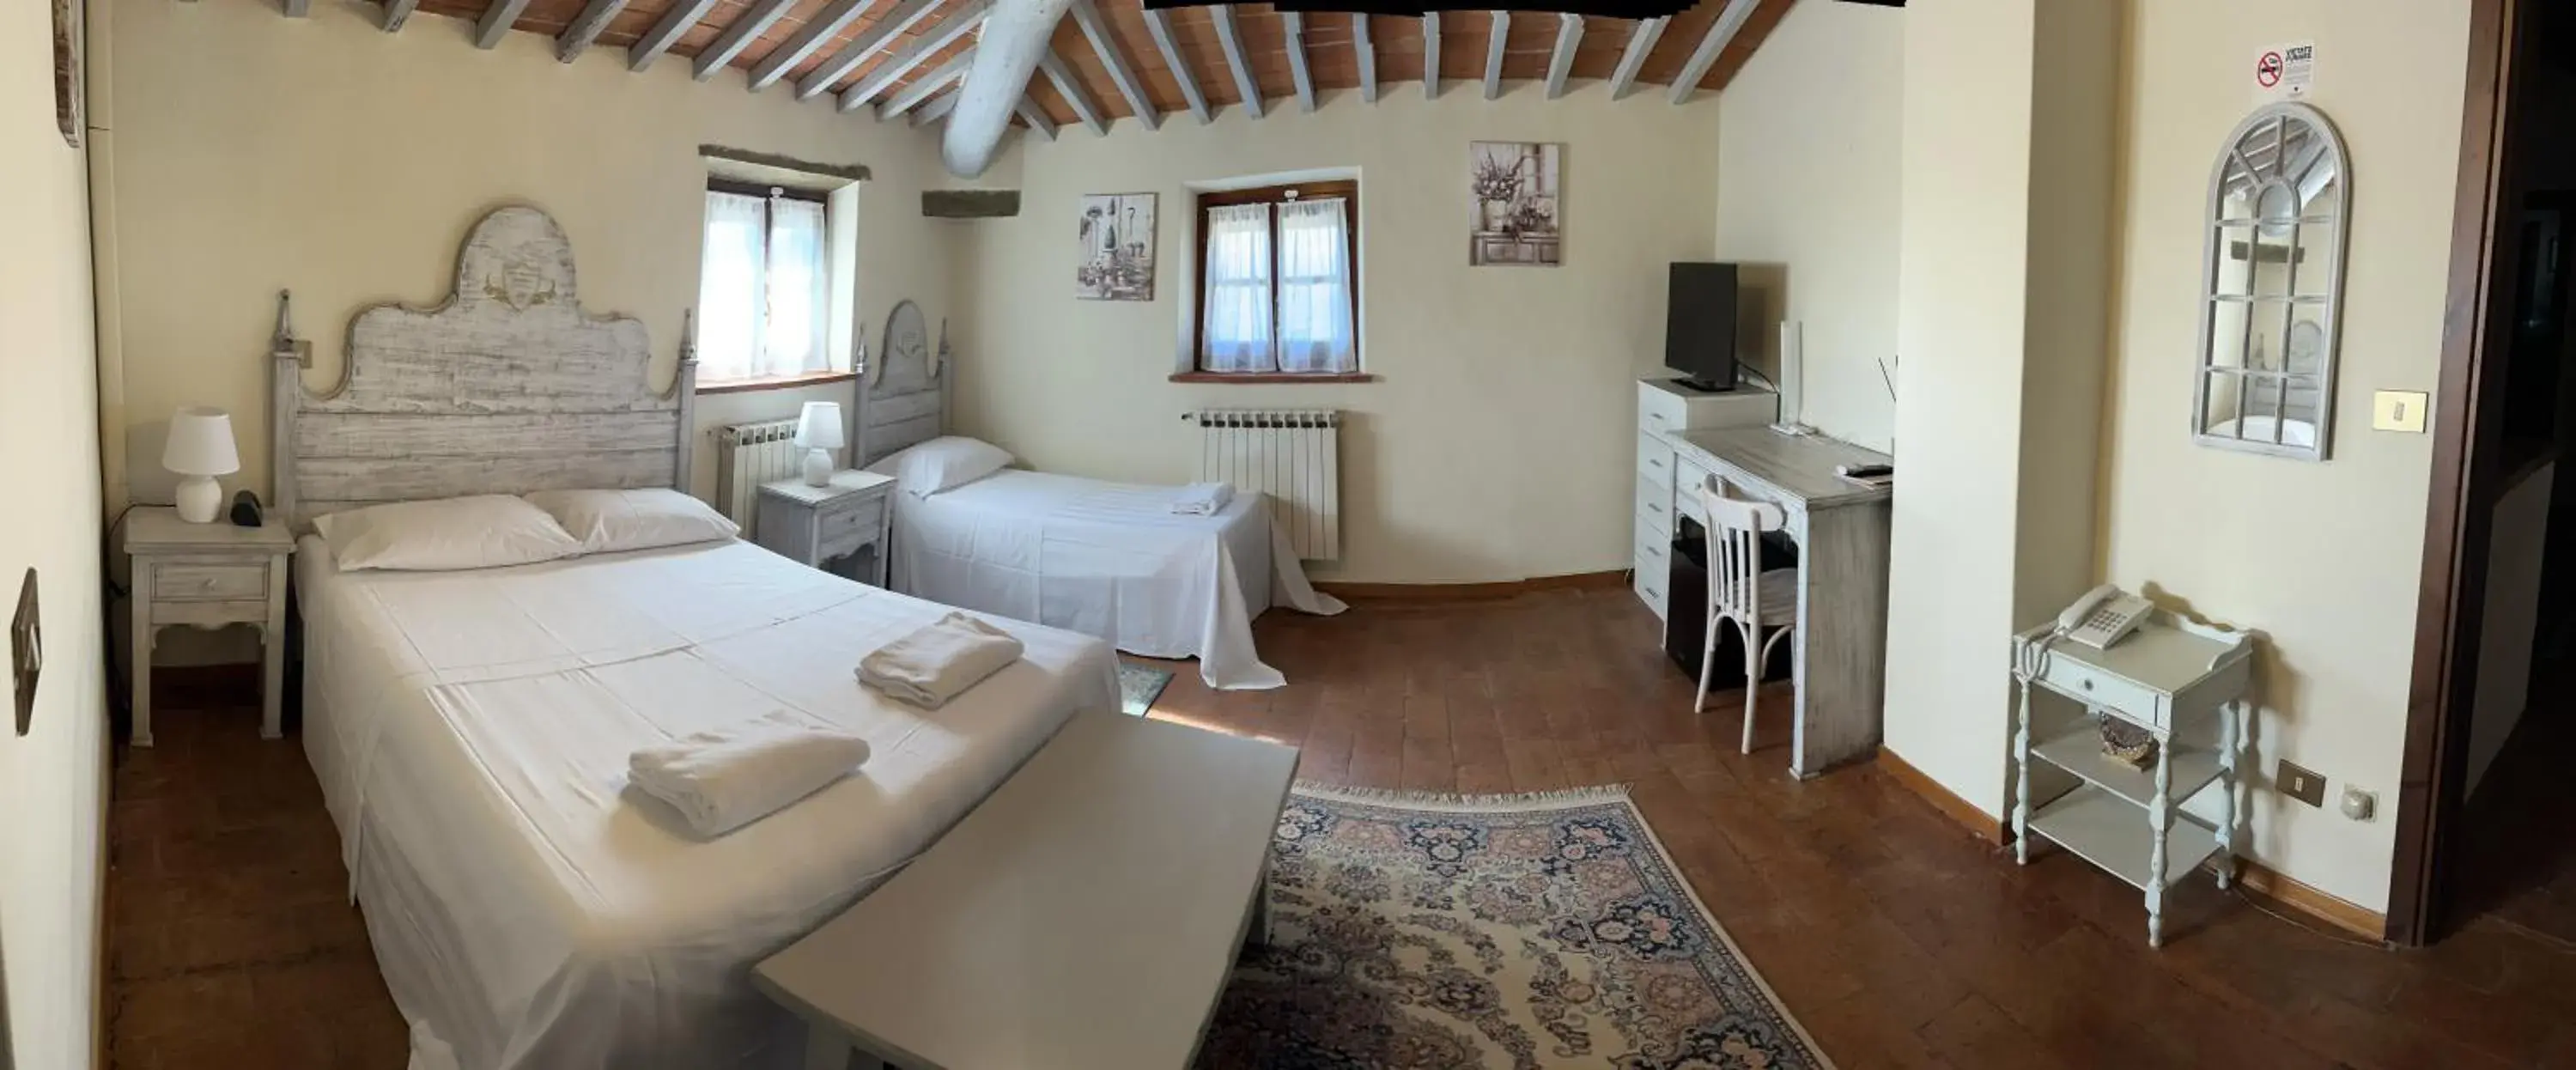 Bedroom in Villa Schiatti